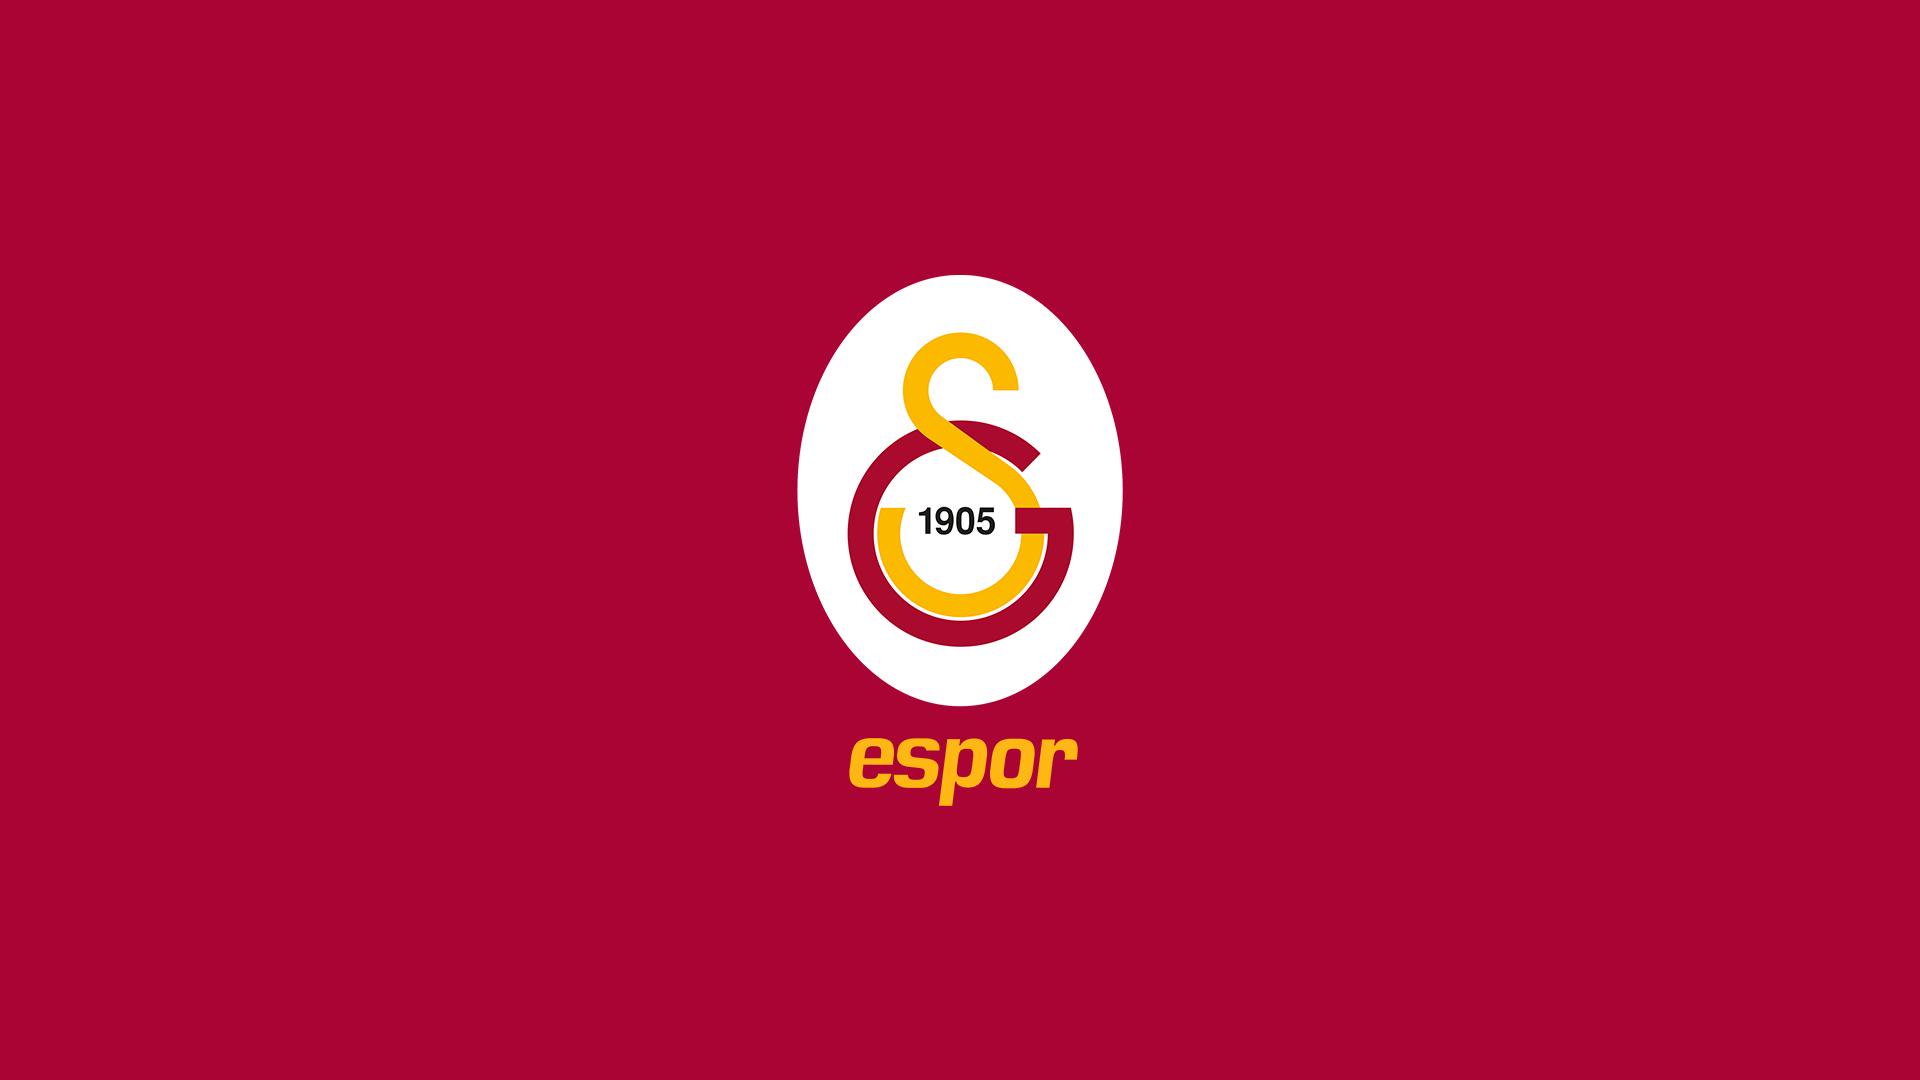 Galatasaray Espor takım ürünleri GSStore üzerinden satışta!